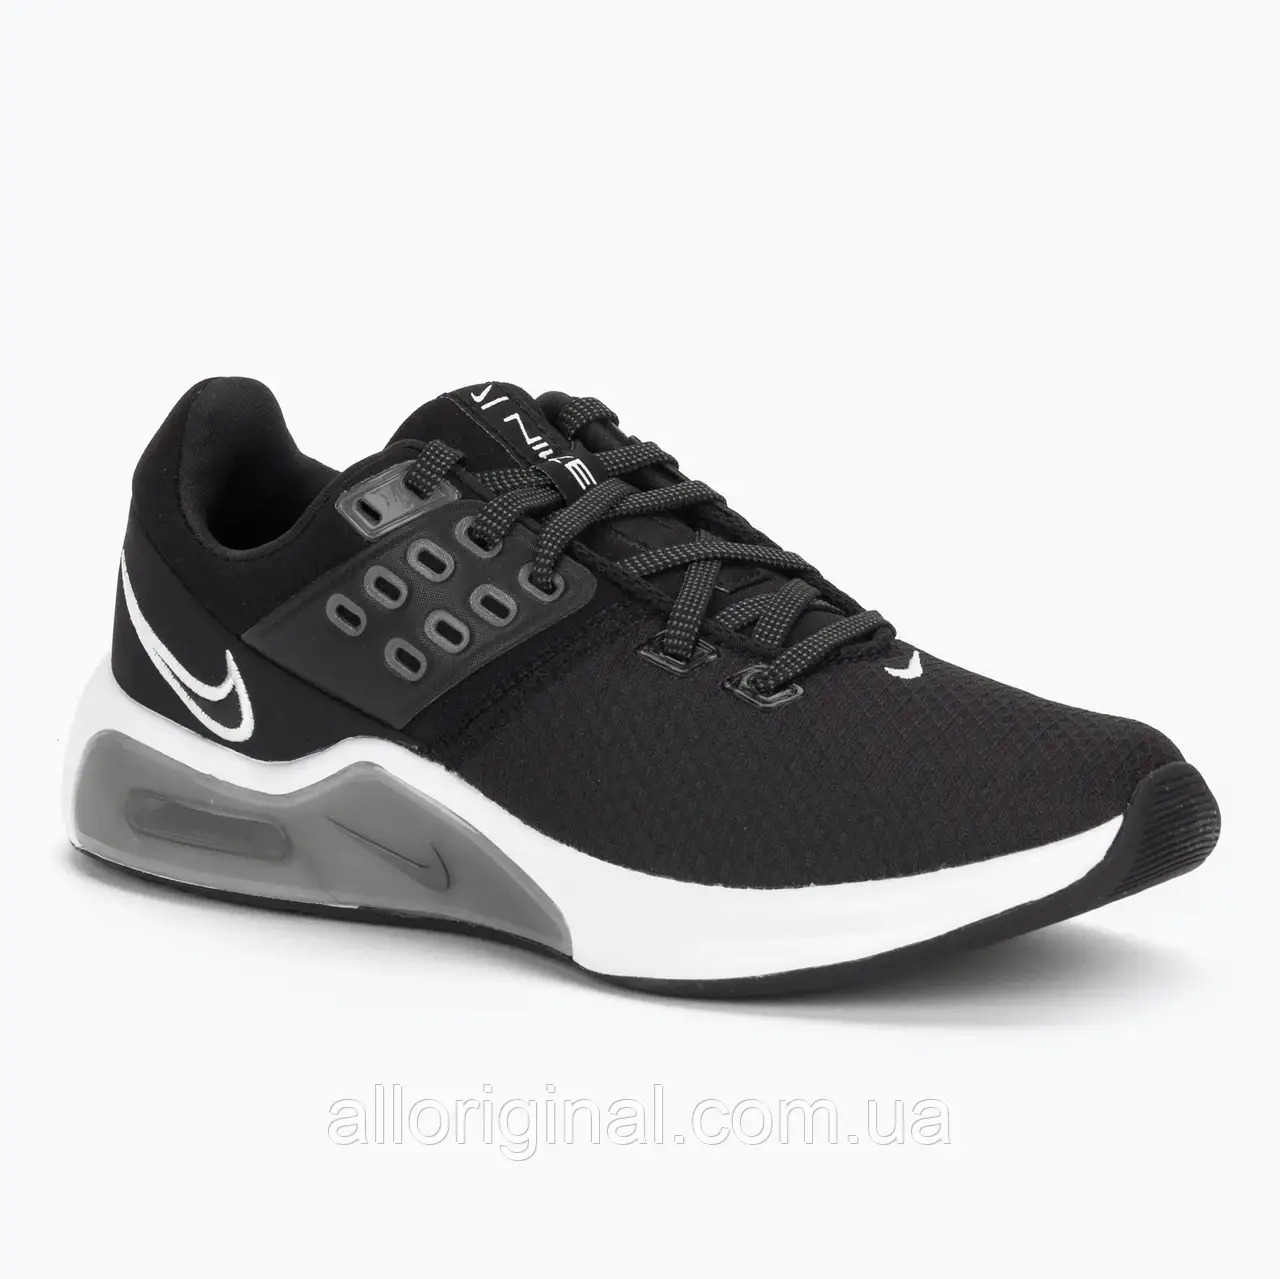 Urbanshop com ua Взуття для тренувань жіноче Nike Air Max Bella Tr 4 чорні CW3398-002 РОЗМІРИ ЗАПИТУЙТЕ